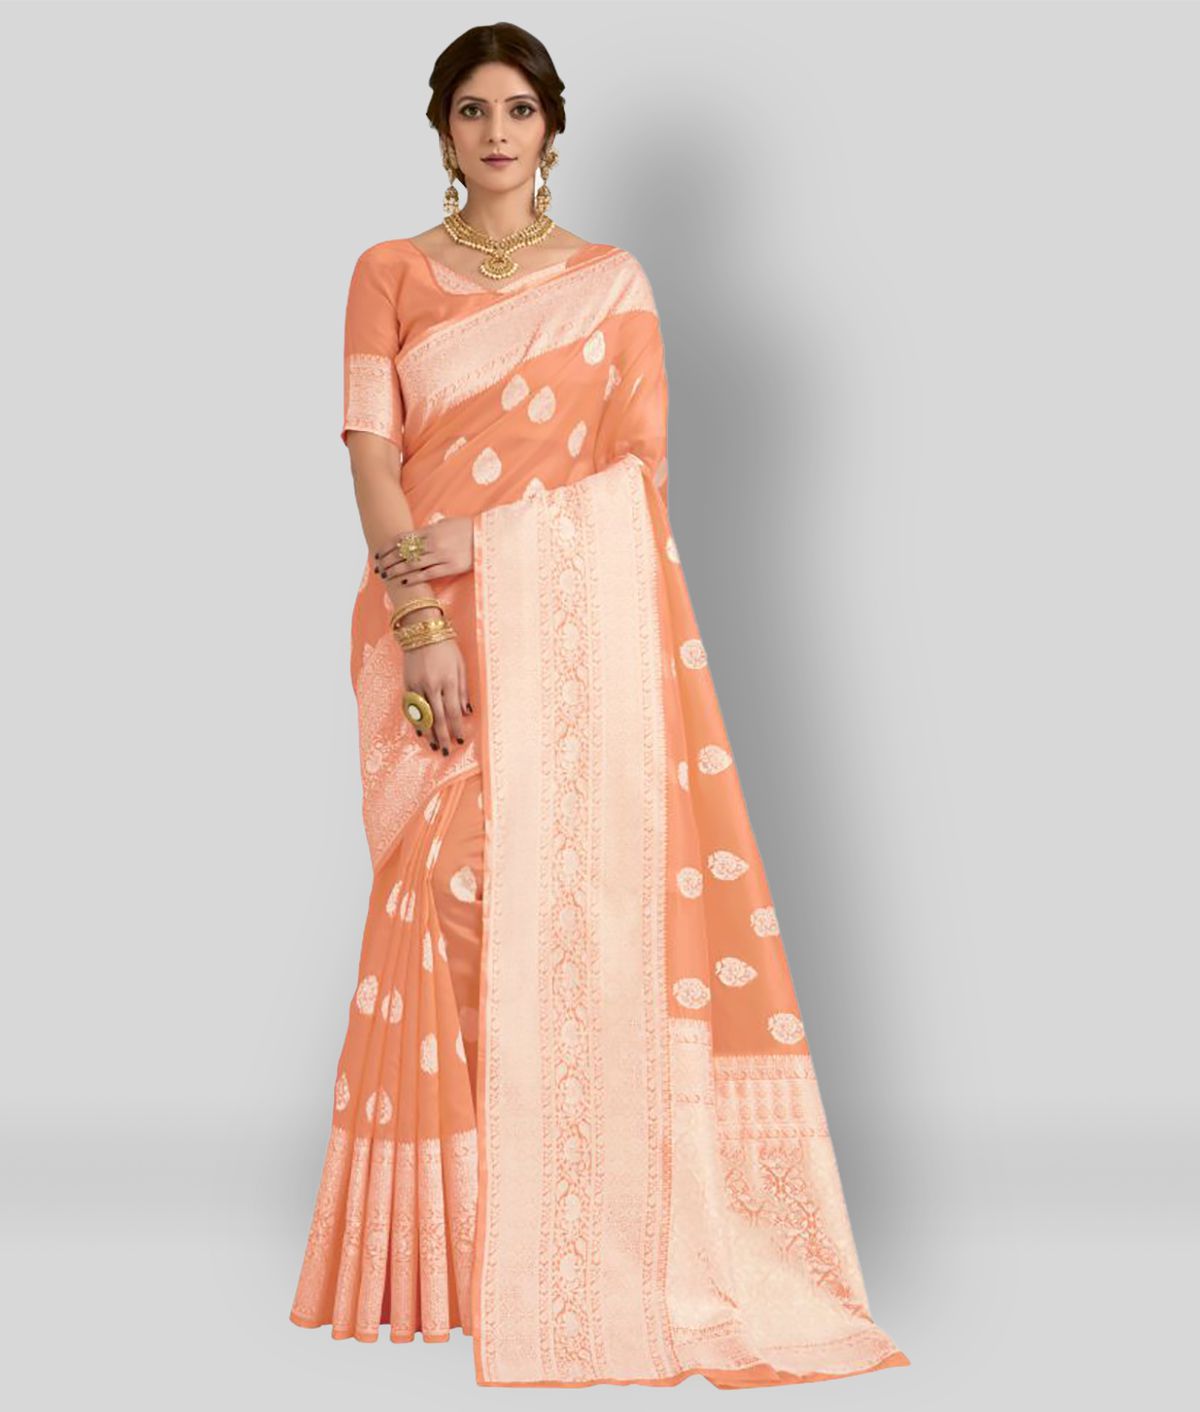     			Sherine - Pink Banarasi Silk Saree With Blouse Piece (Pack of 1)